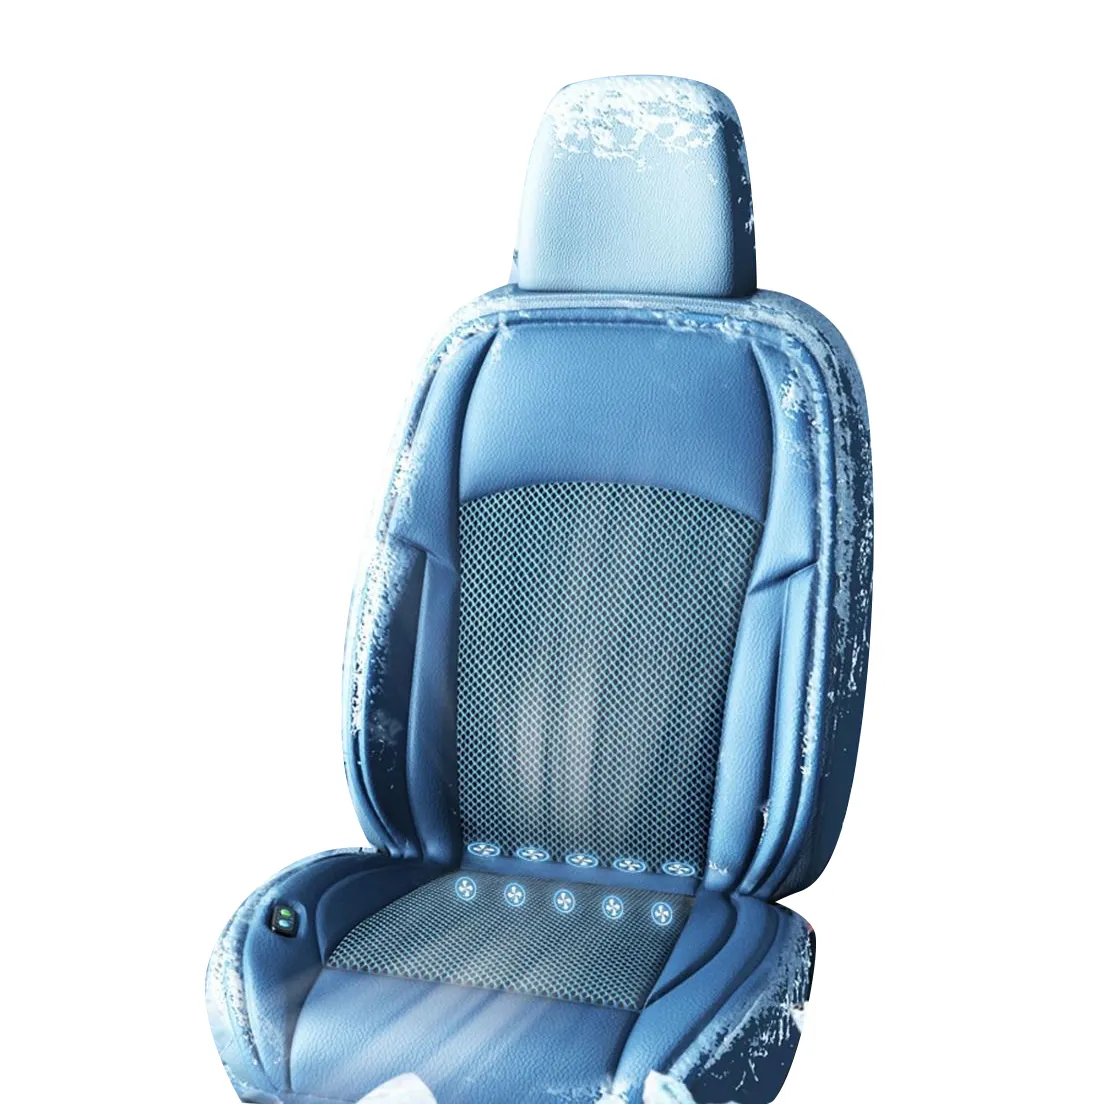 Otomatik iç aksesuar 12v 24v güçlü fan akıllı masaj ısı removol havalandırma için soğutma araba koltuk minderi